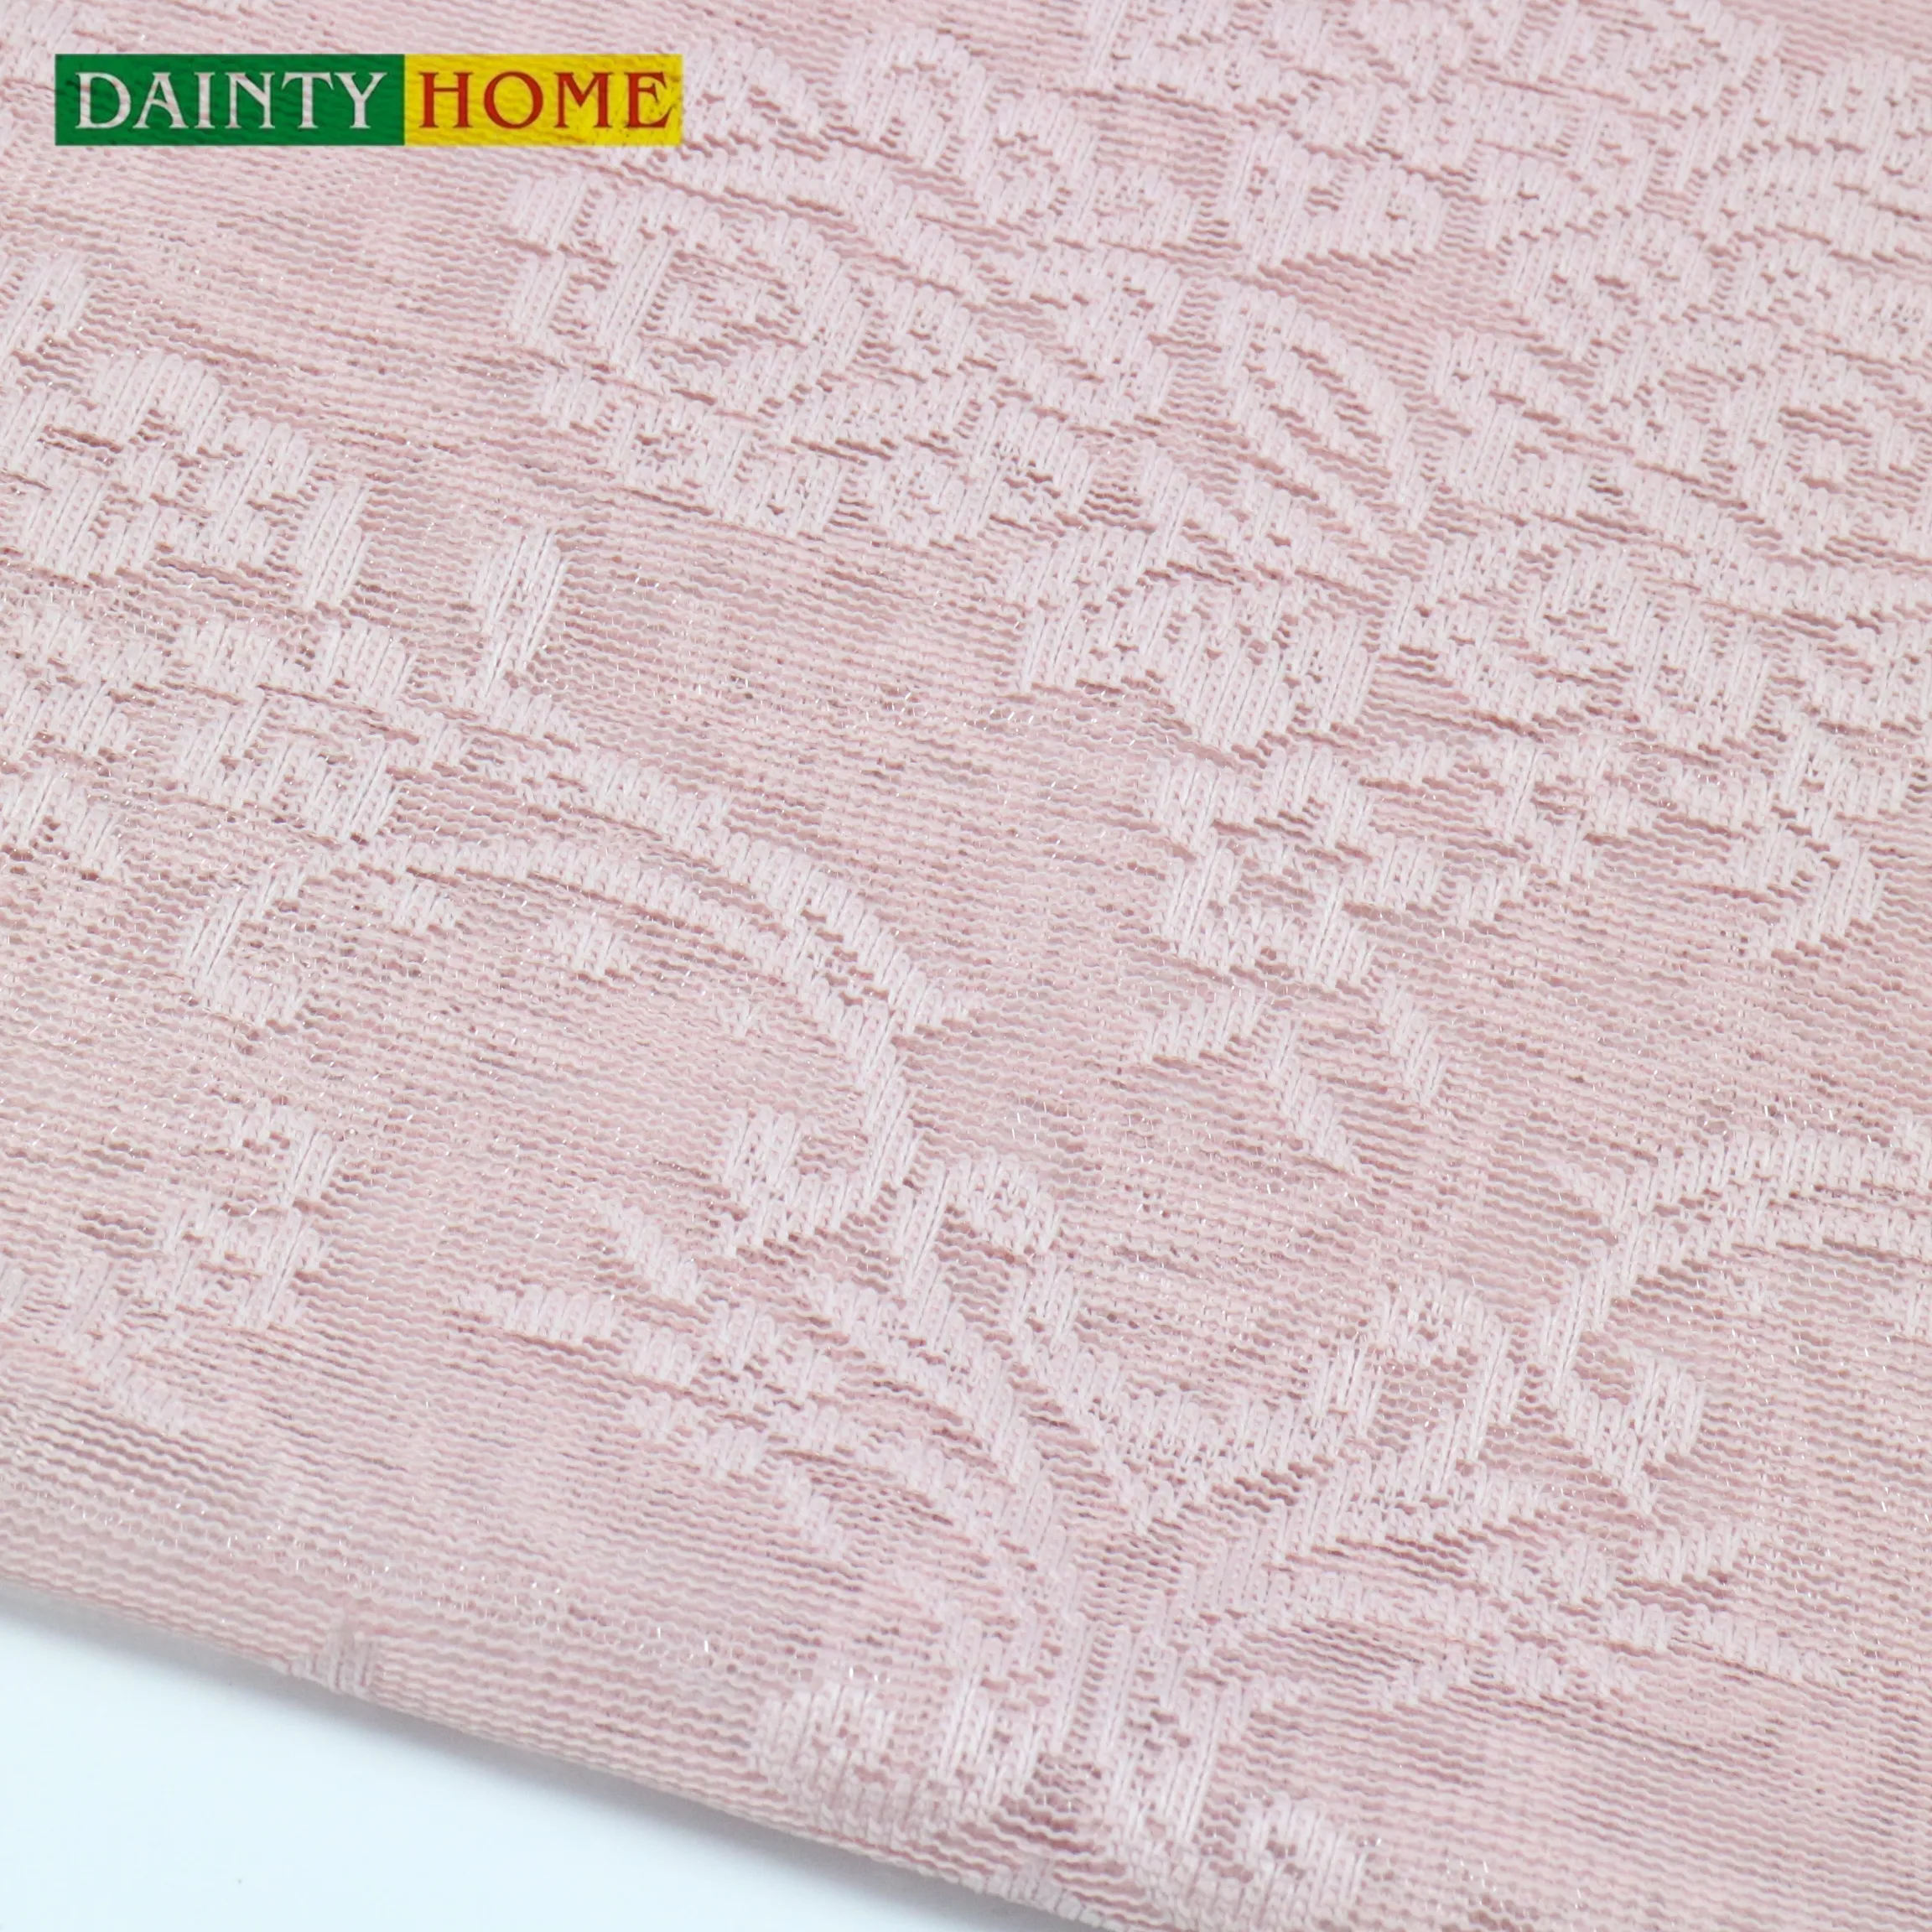 Hilos de cortina bordados de flores con Base rosa, cortina de ojal hecha para dormitorio